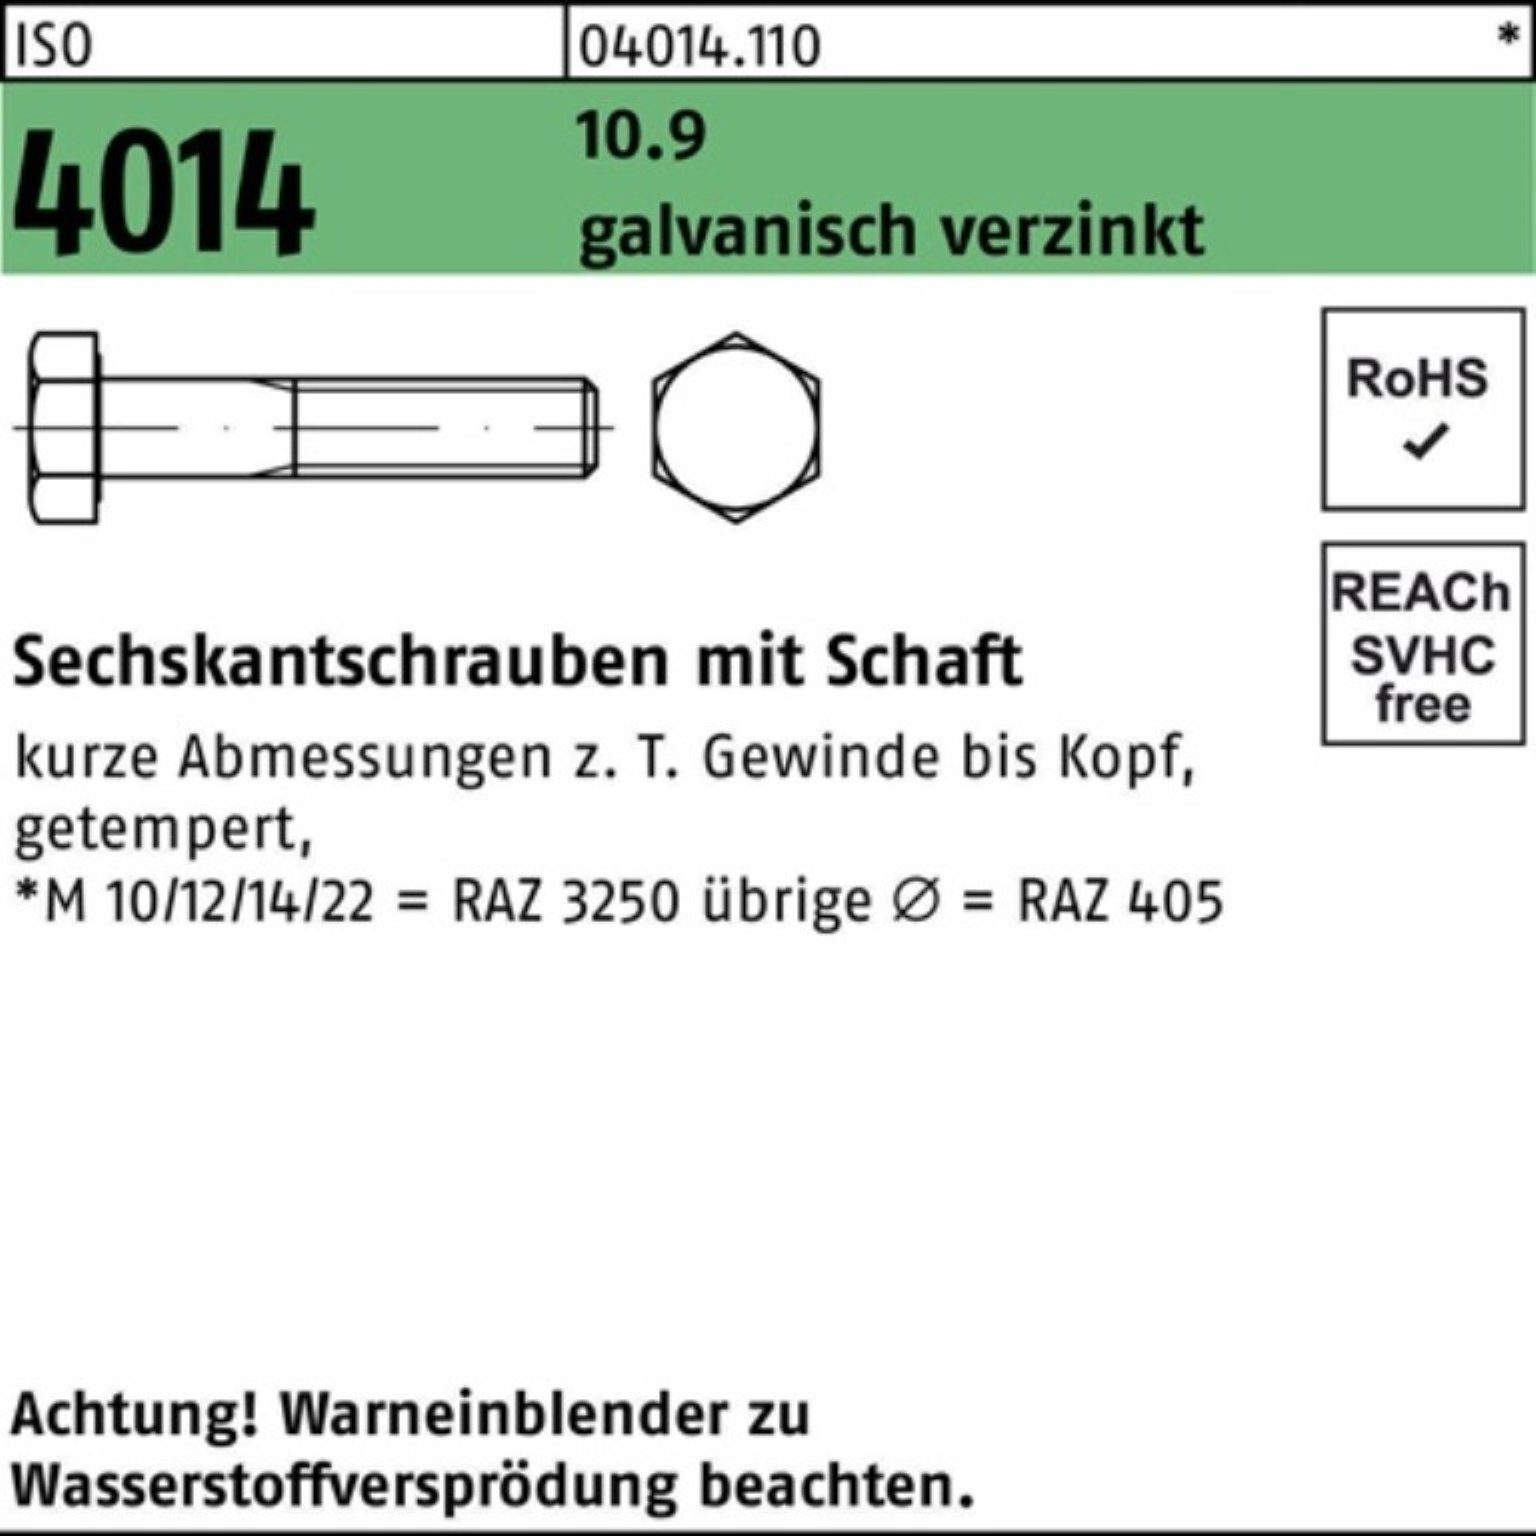 Bufab Sechskantschraube 100er Pack Sechskantschraube ISO galv.verz. 10.9 5 M12x 85 Schaft 4014